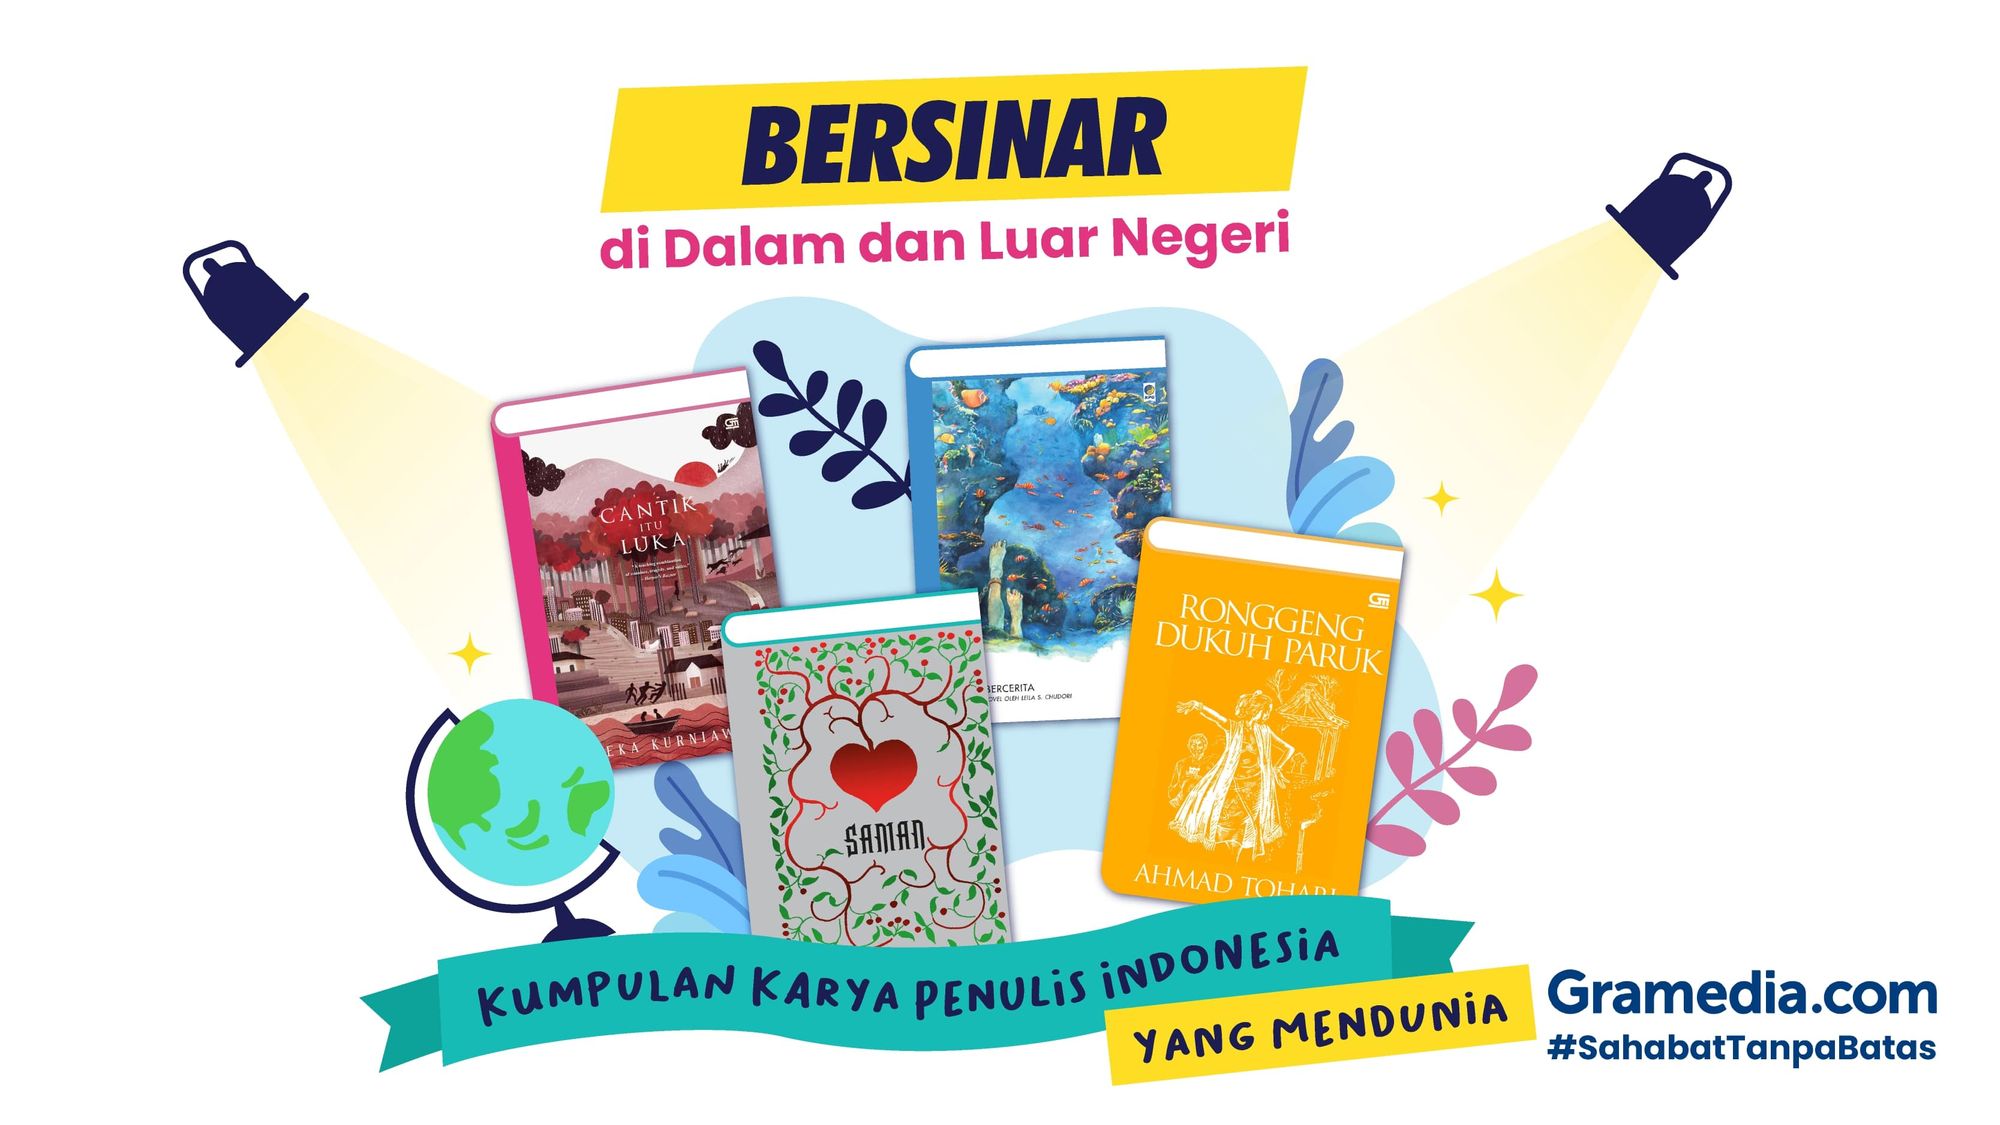 10 Rekomendasi Buku Karya Penulis Indonesia yang Mendunia